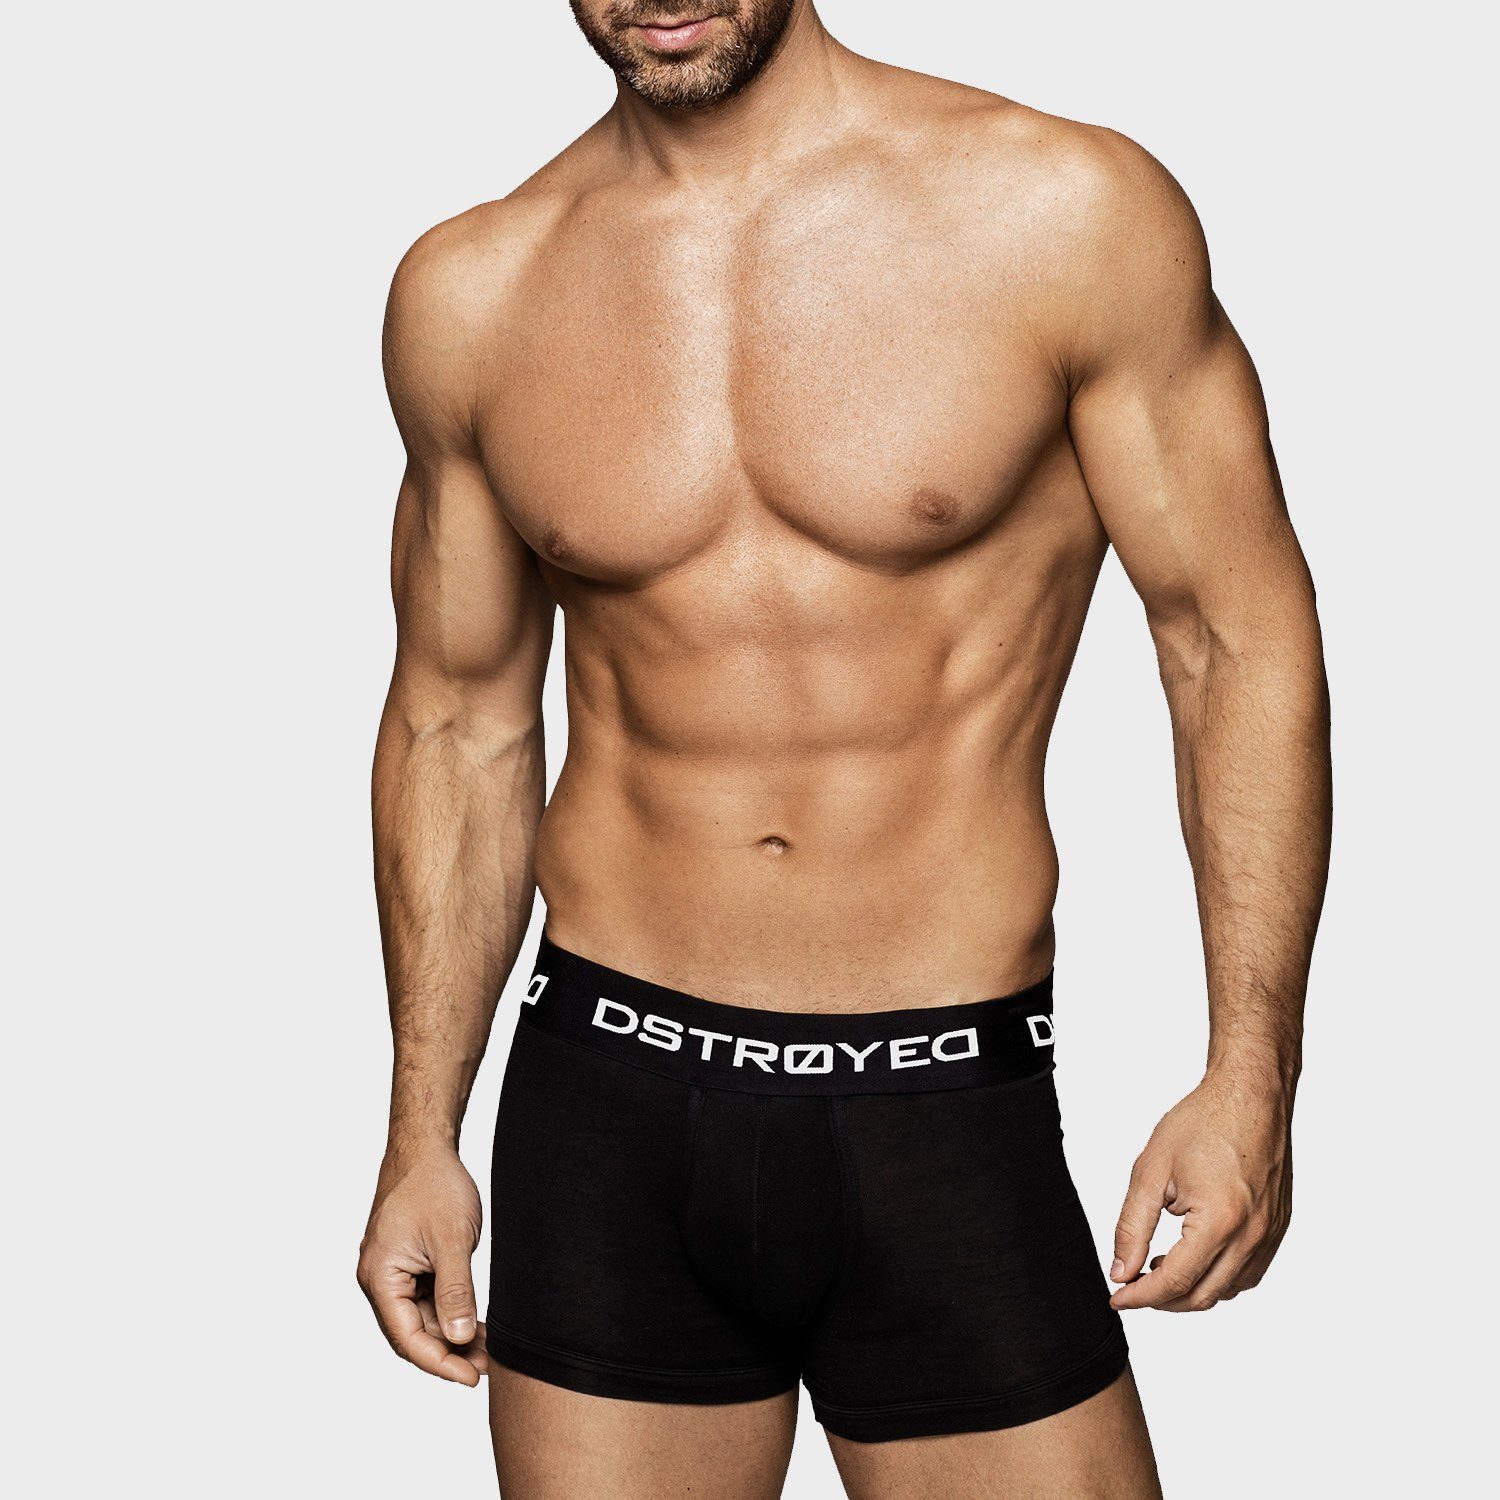 315b-schwarz/weiß (Vorteilspack, DSTROYED 8er, Qualität Premium 8er Unterhosen Boxershorts Pack) perfekte Männer Passform Baumwolle Herren